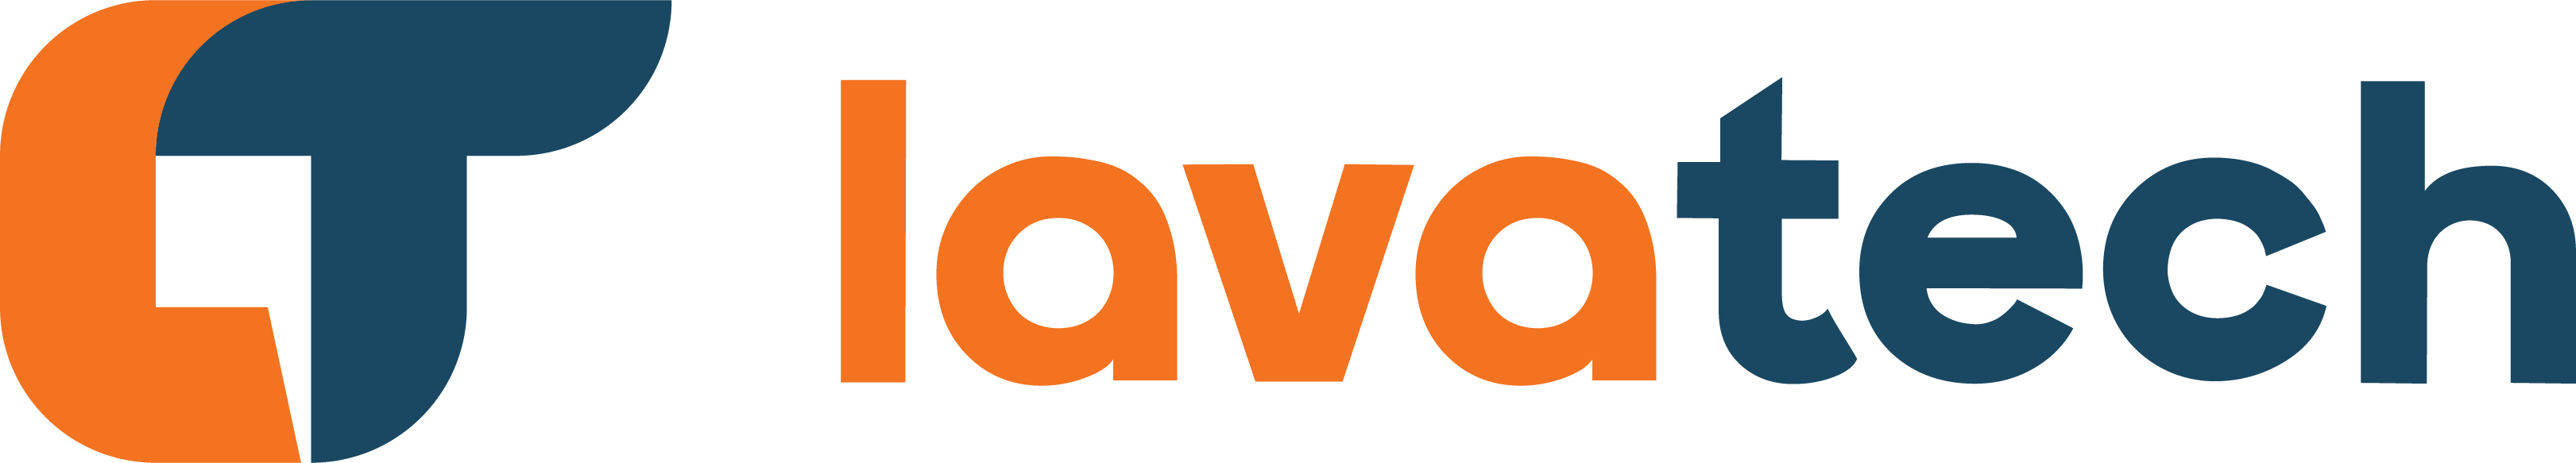 LavaTech